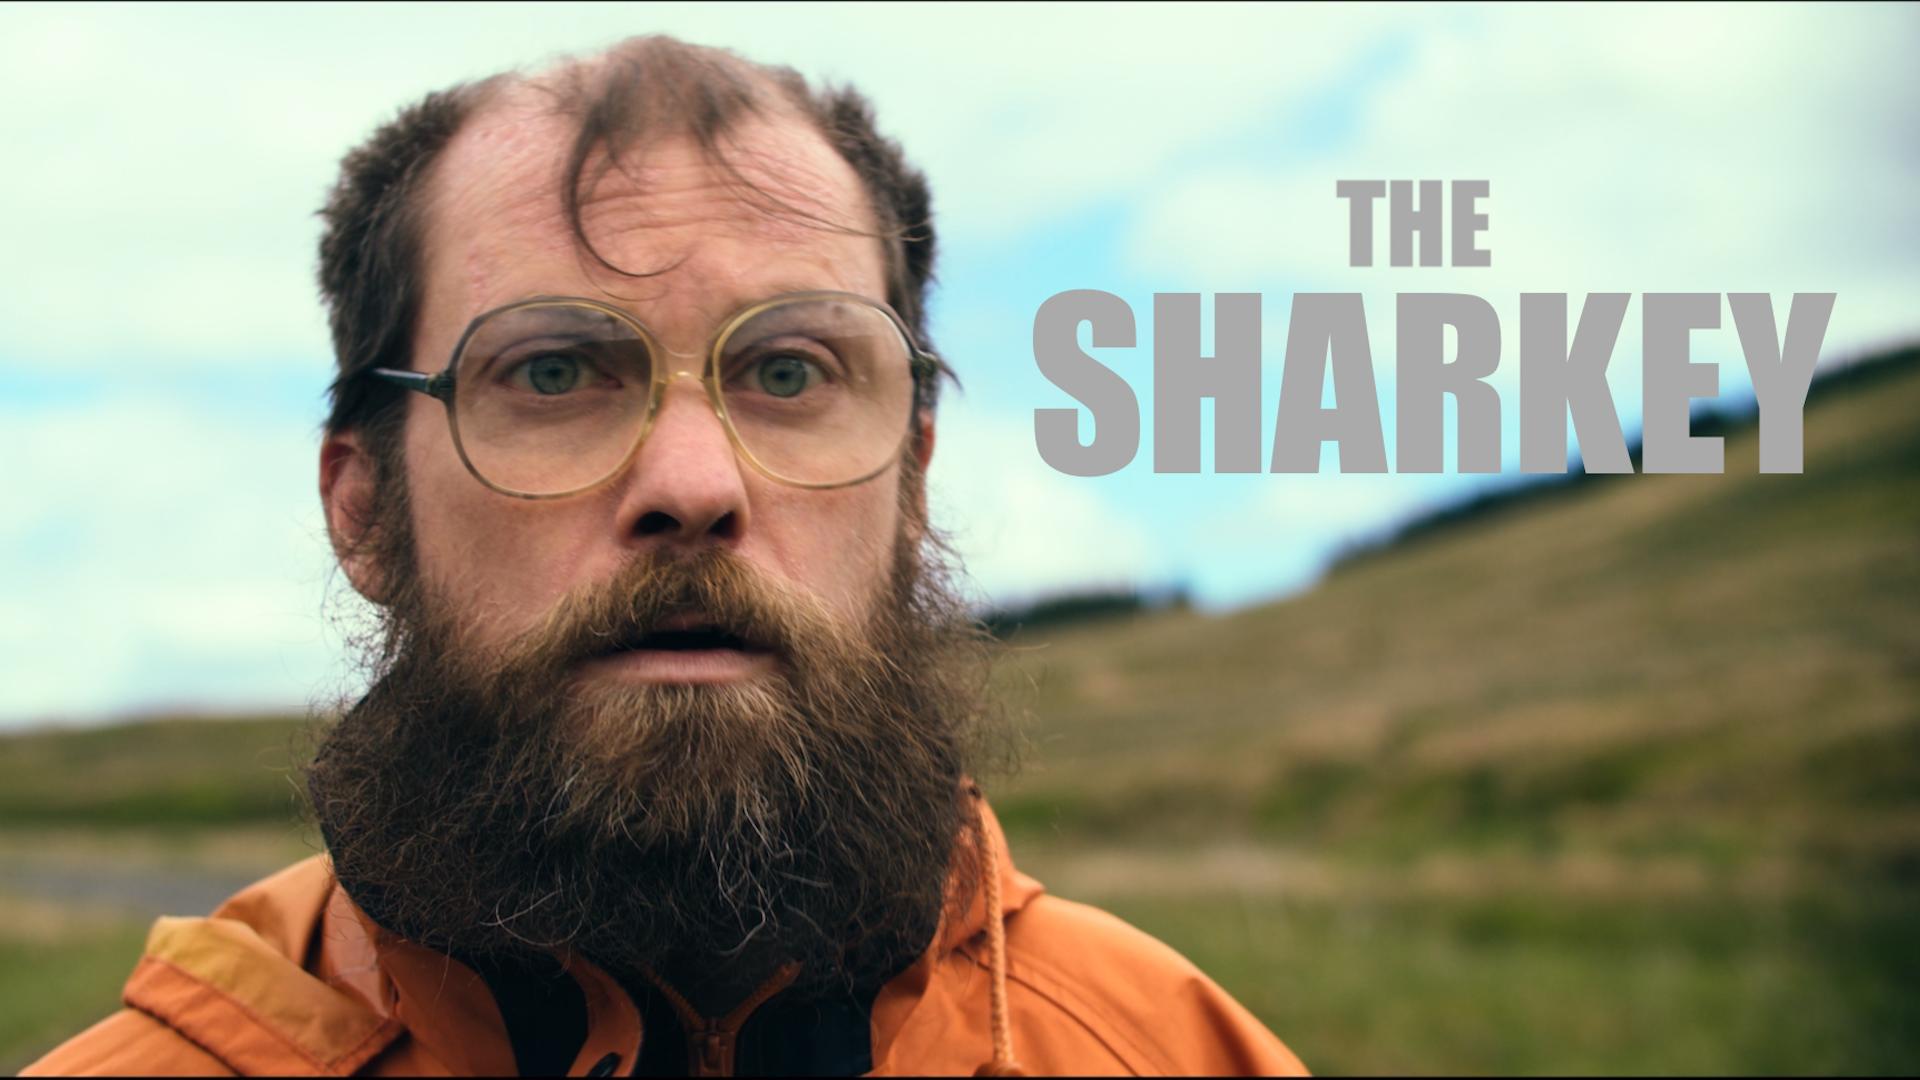 The Sharkey